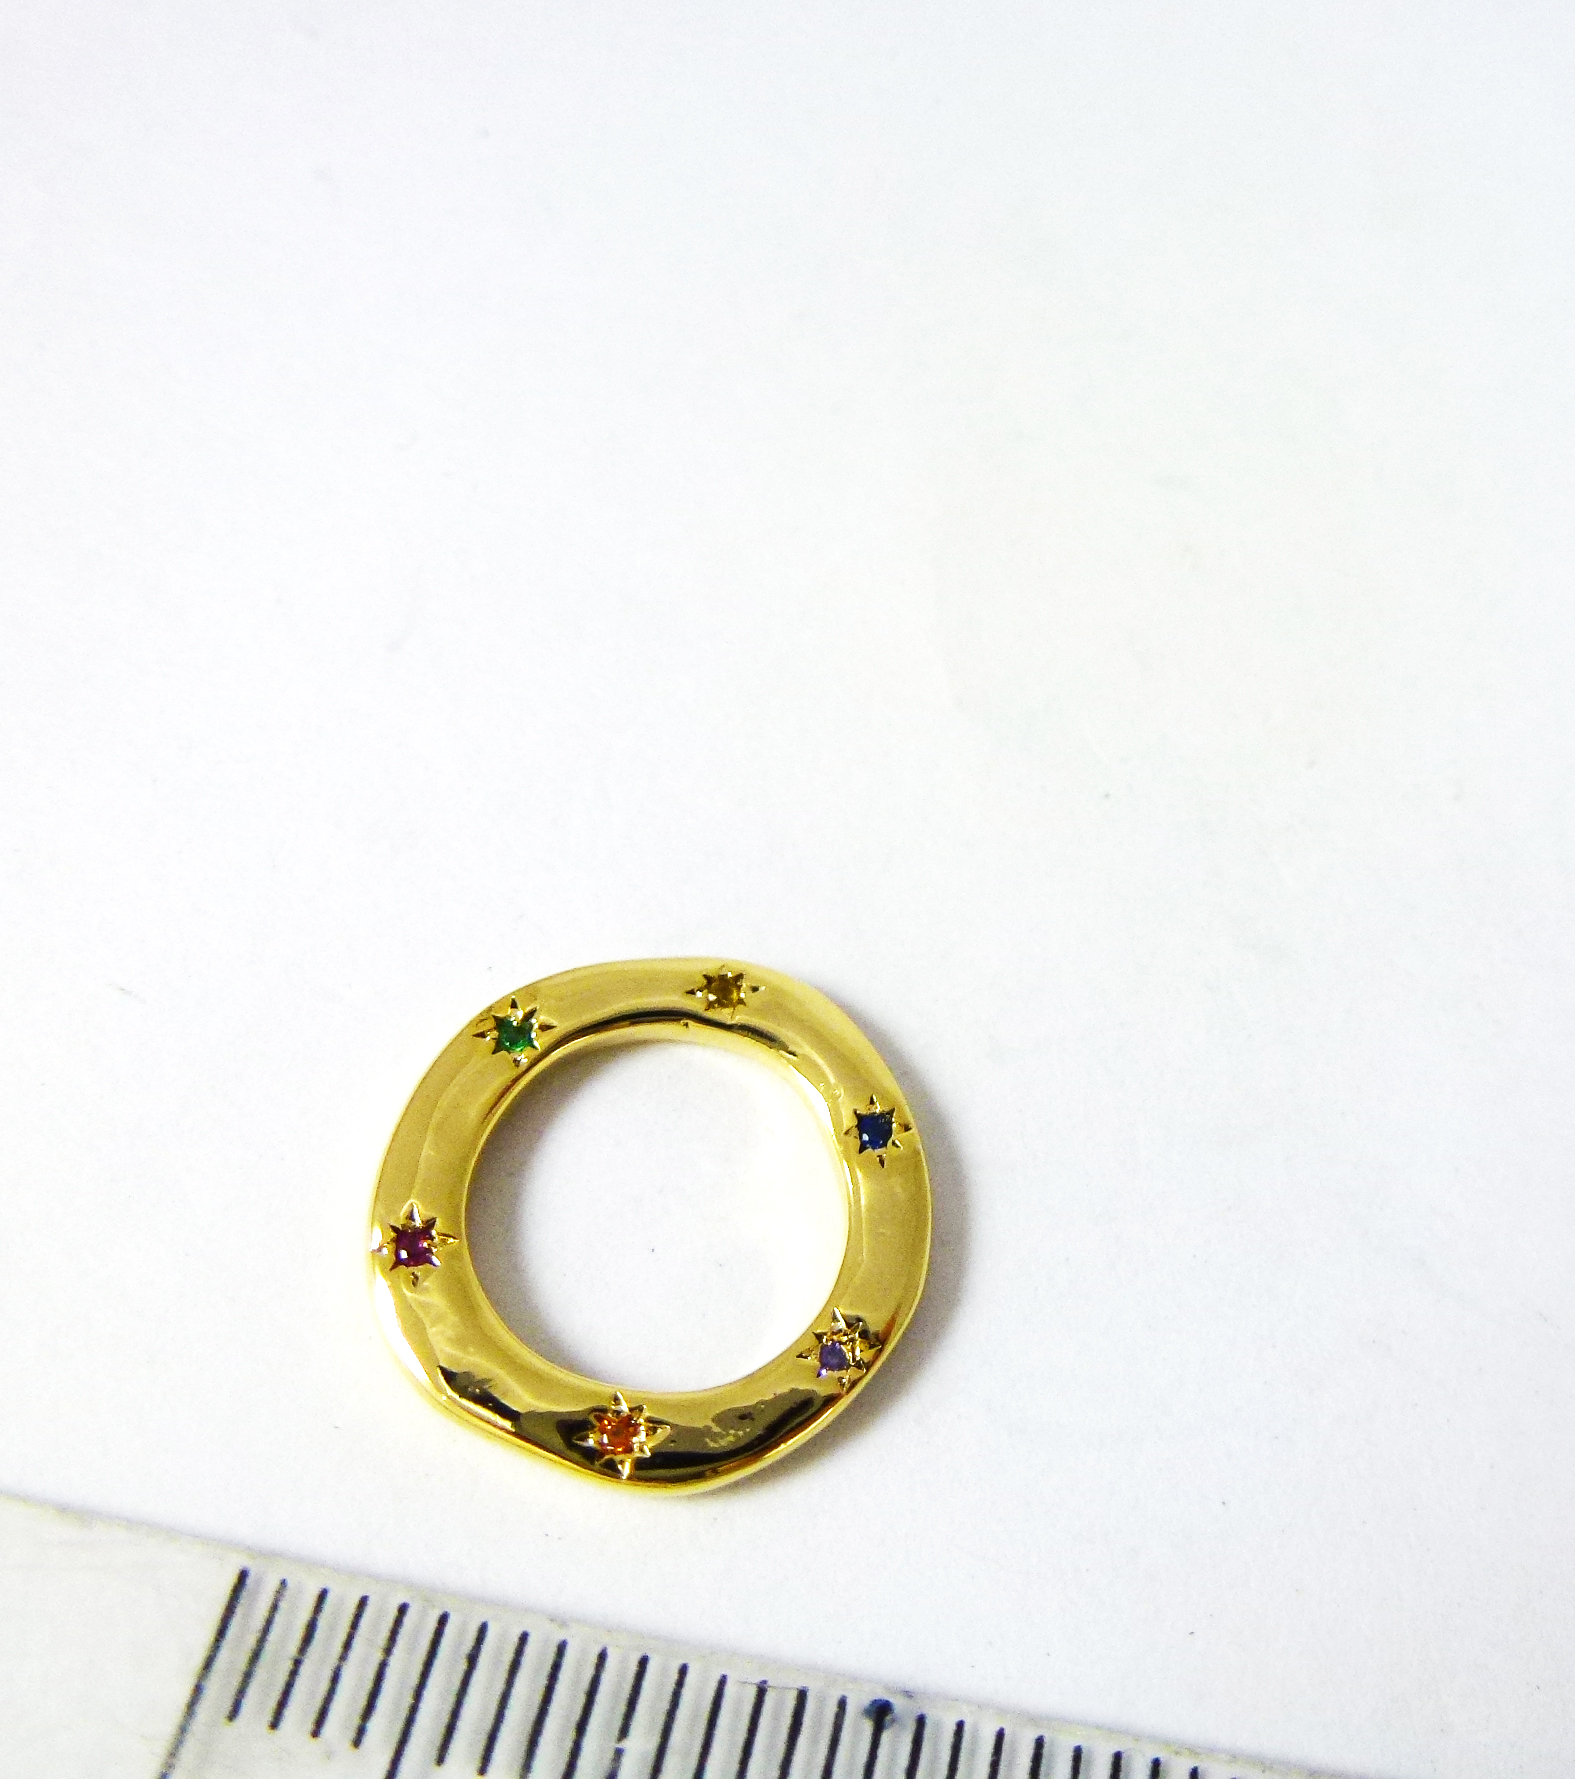 15mm銅鍍金色圓圈鑲六色彩鑽